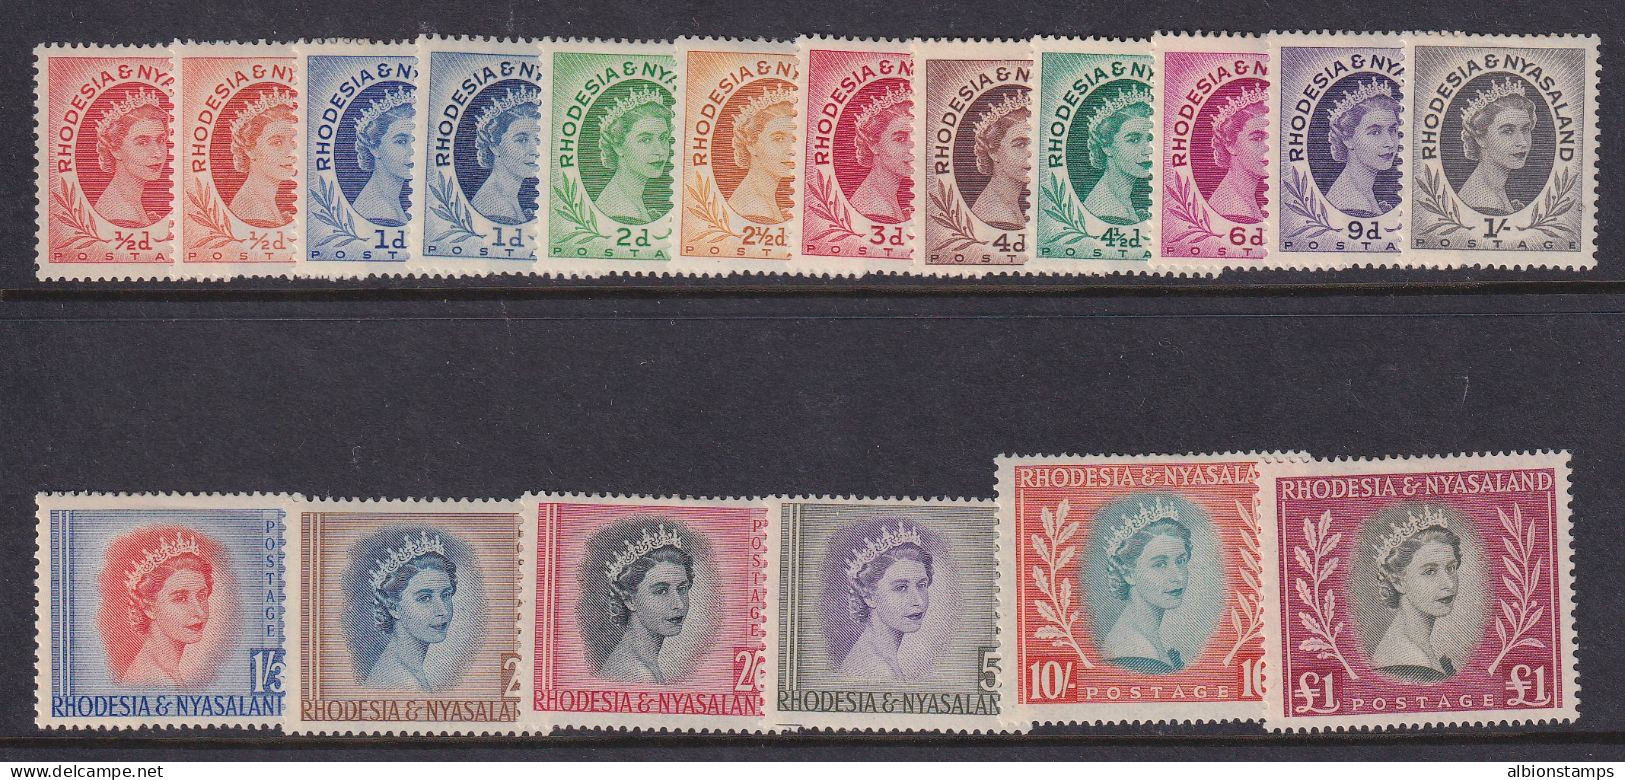 Rhodesia & Nyasaland, Scott 141-155 (SG 1-15), MLH - Rhodesia & Nyasaland (1954-1963)